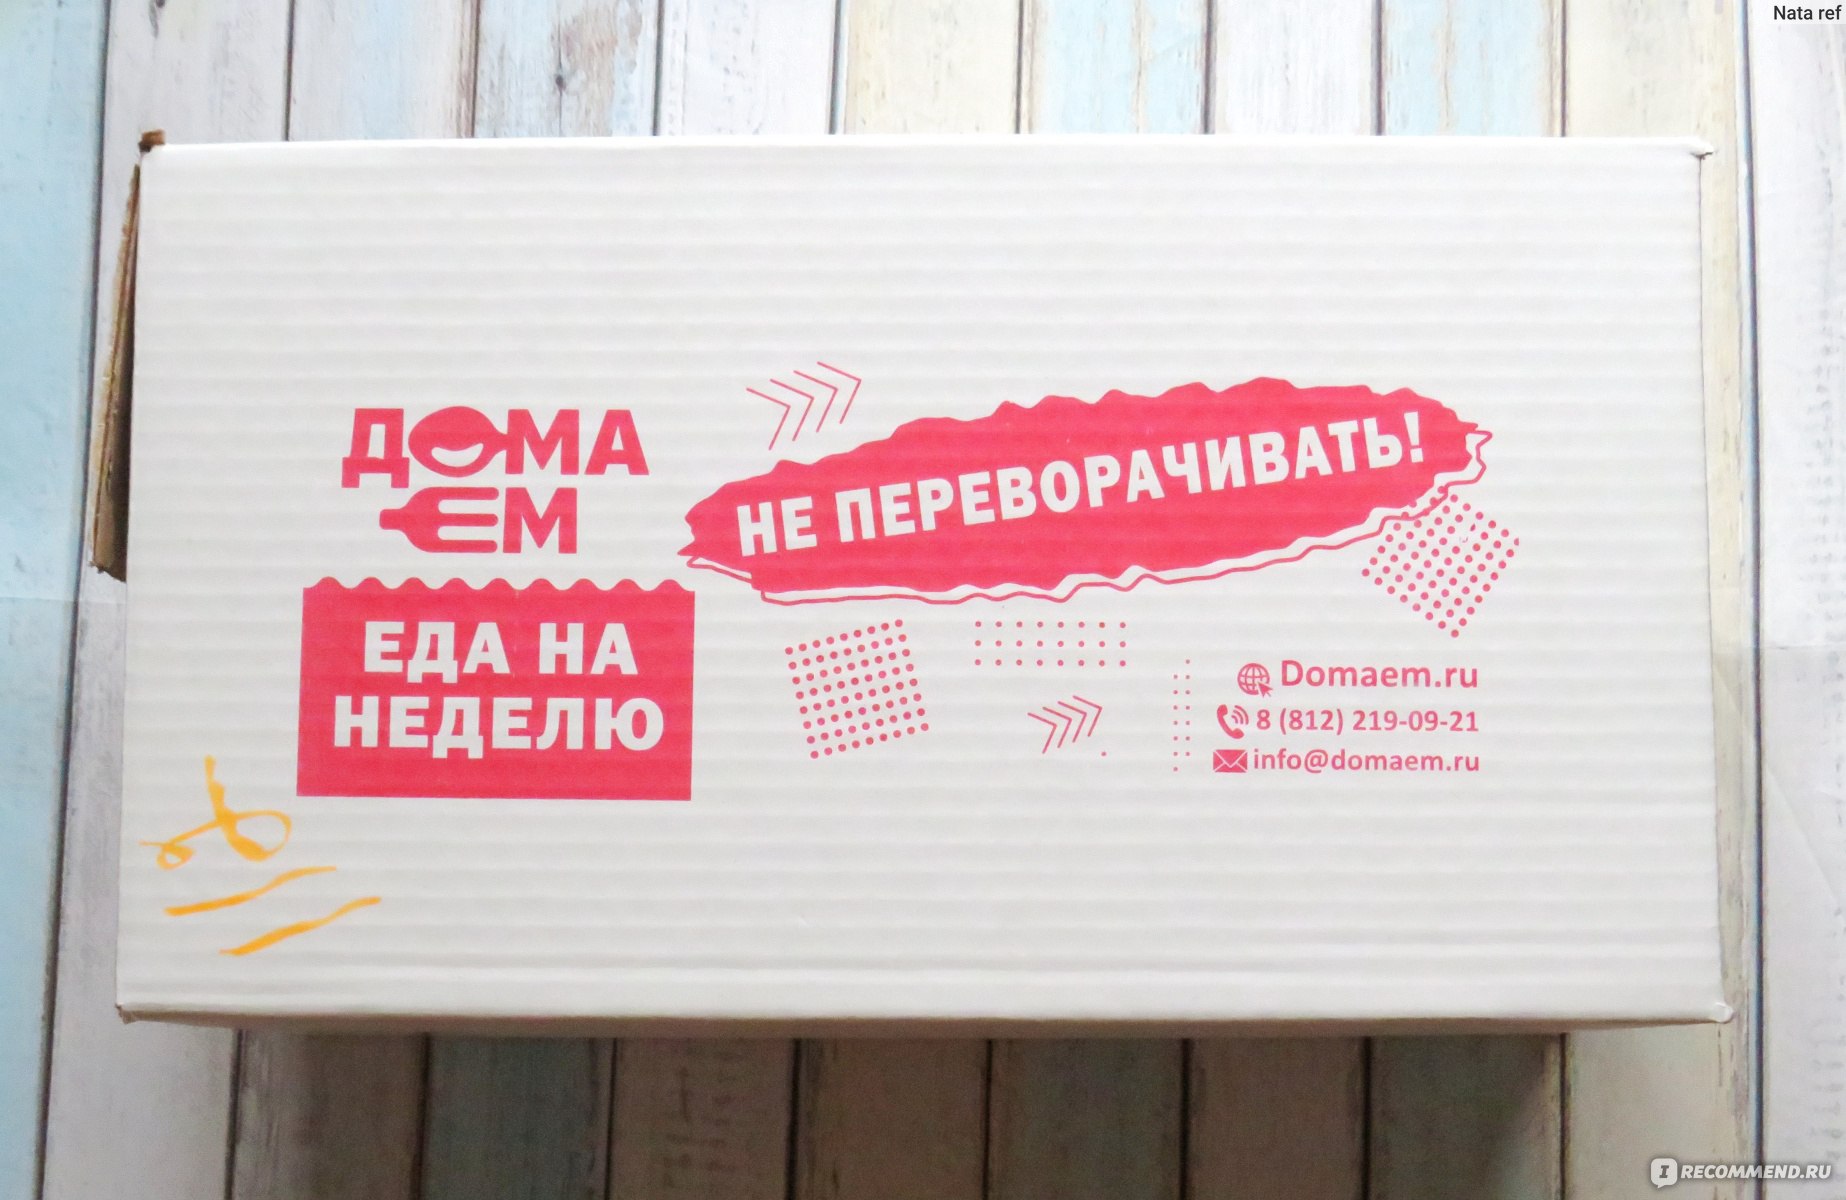 Дома Ем - сервис по доставке готовой домашней еды, Санкт-Петербург фото